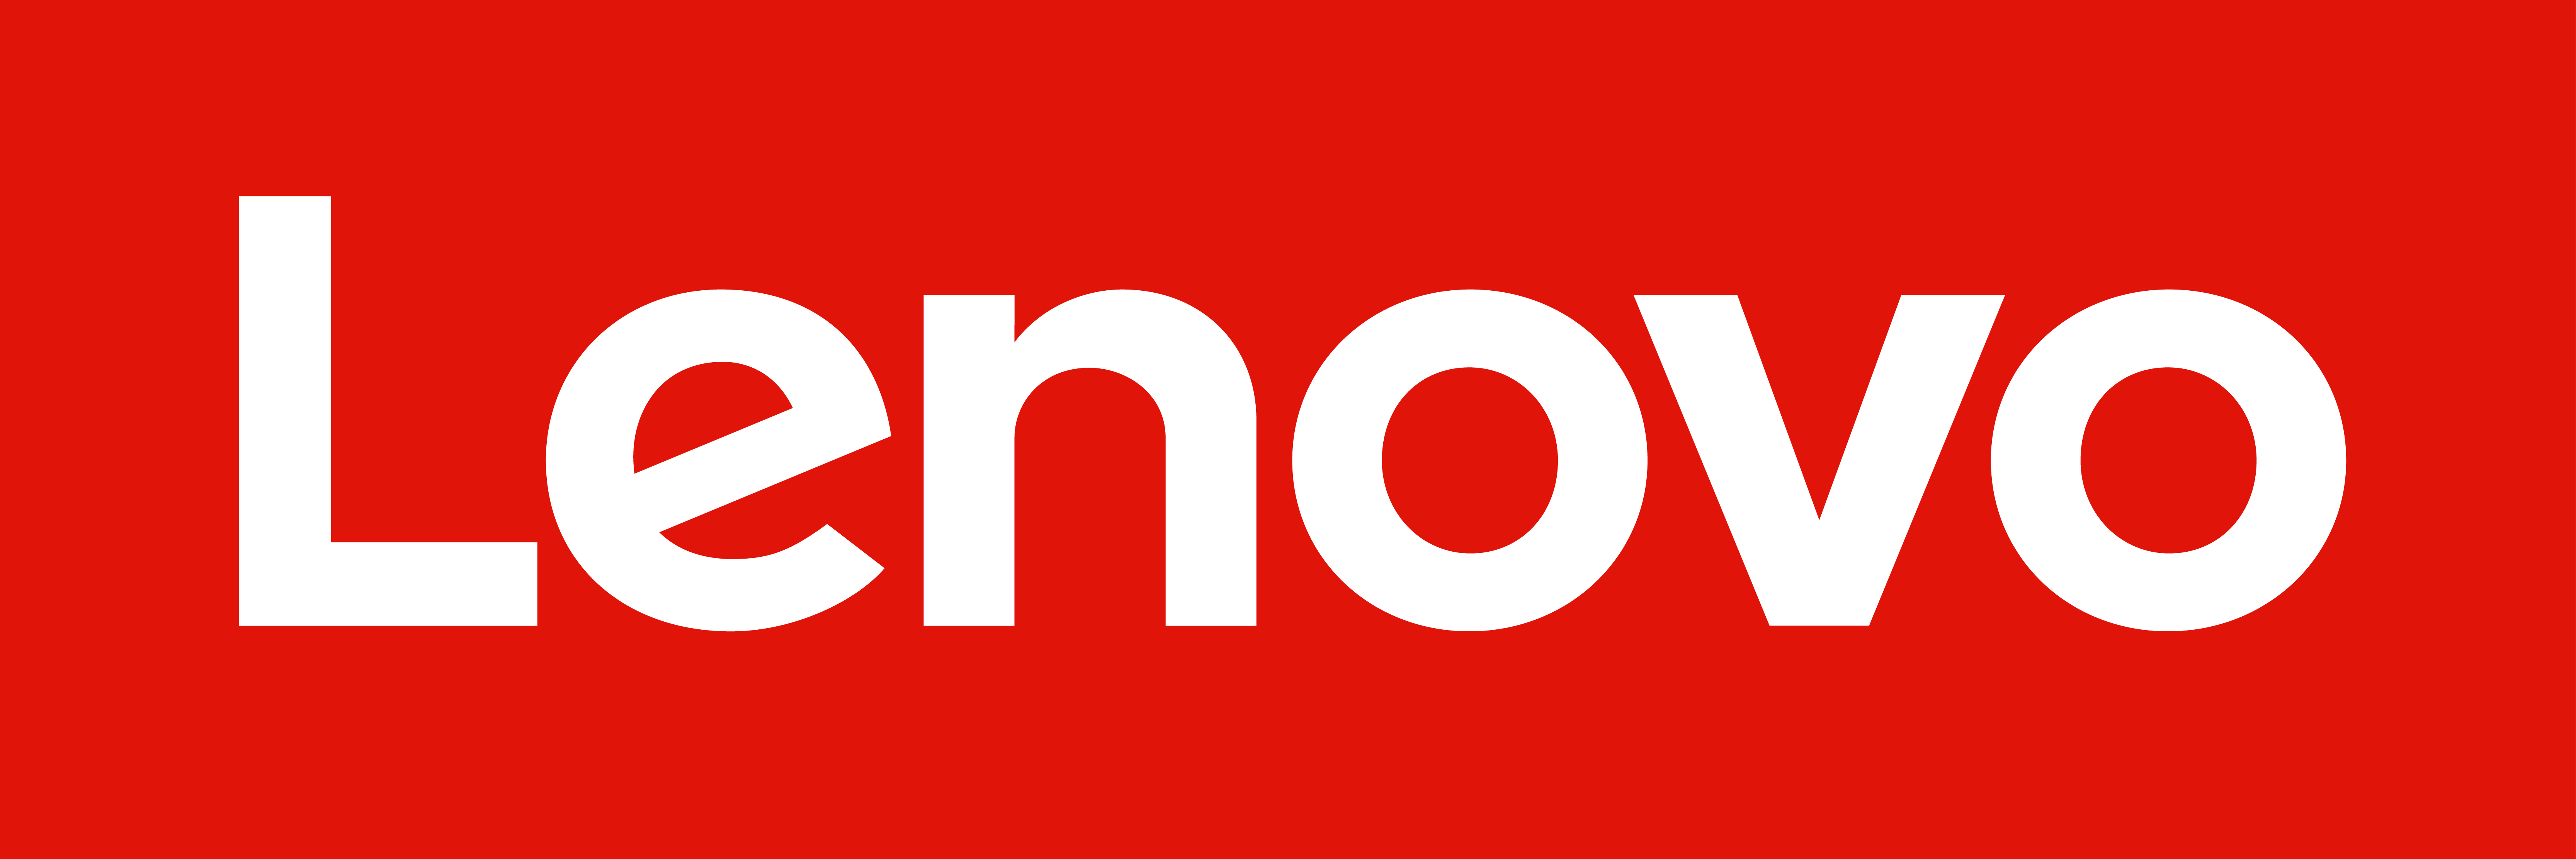 Riassunto: Lenovo annuncia innovazioni nei settori di gaming, software,  grafica e accessori per le festività